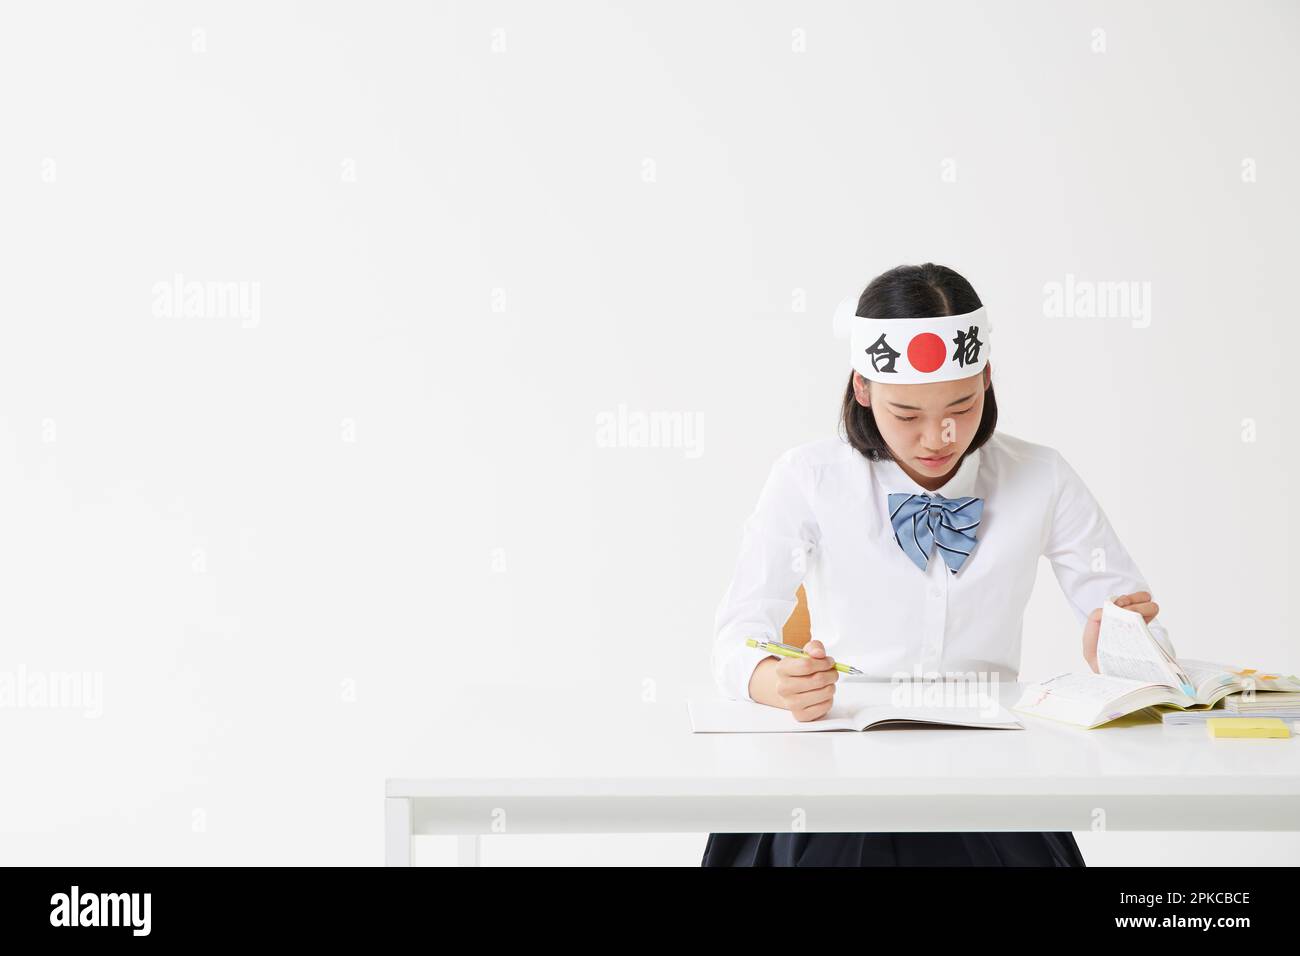 Ein Highschool-Mädchen, das während des Studiums ein "Hachimaki" trägt Stockfoto